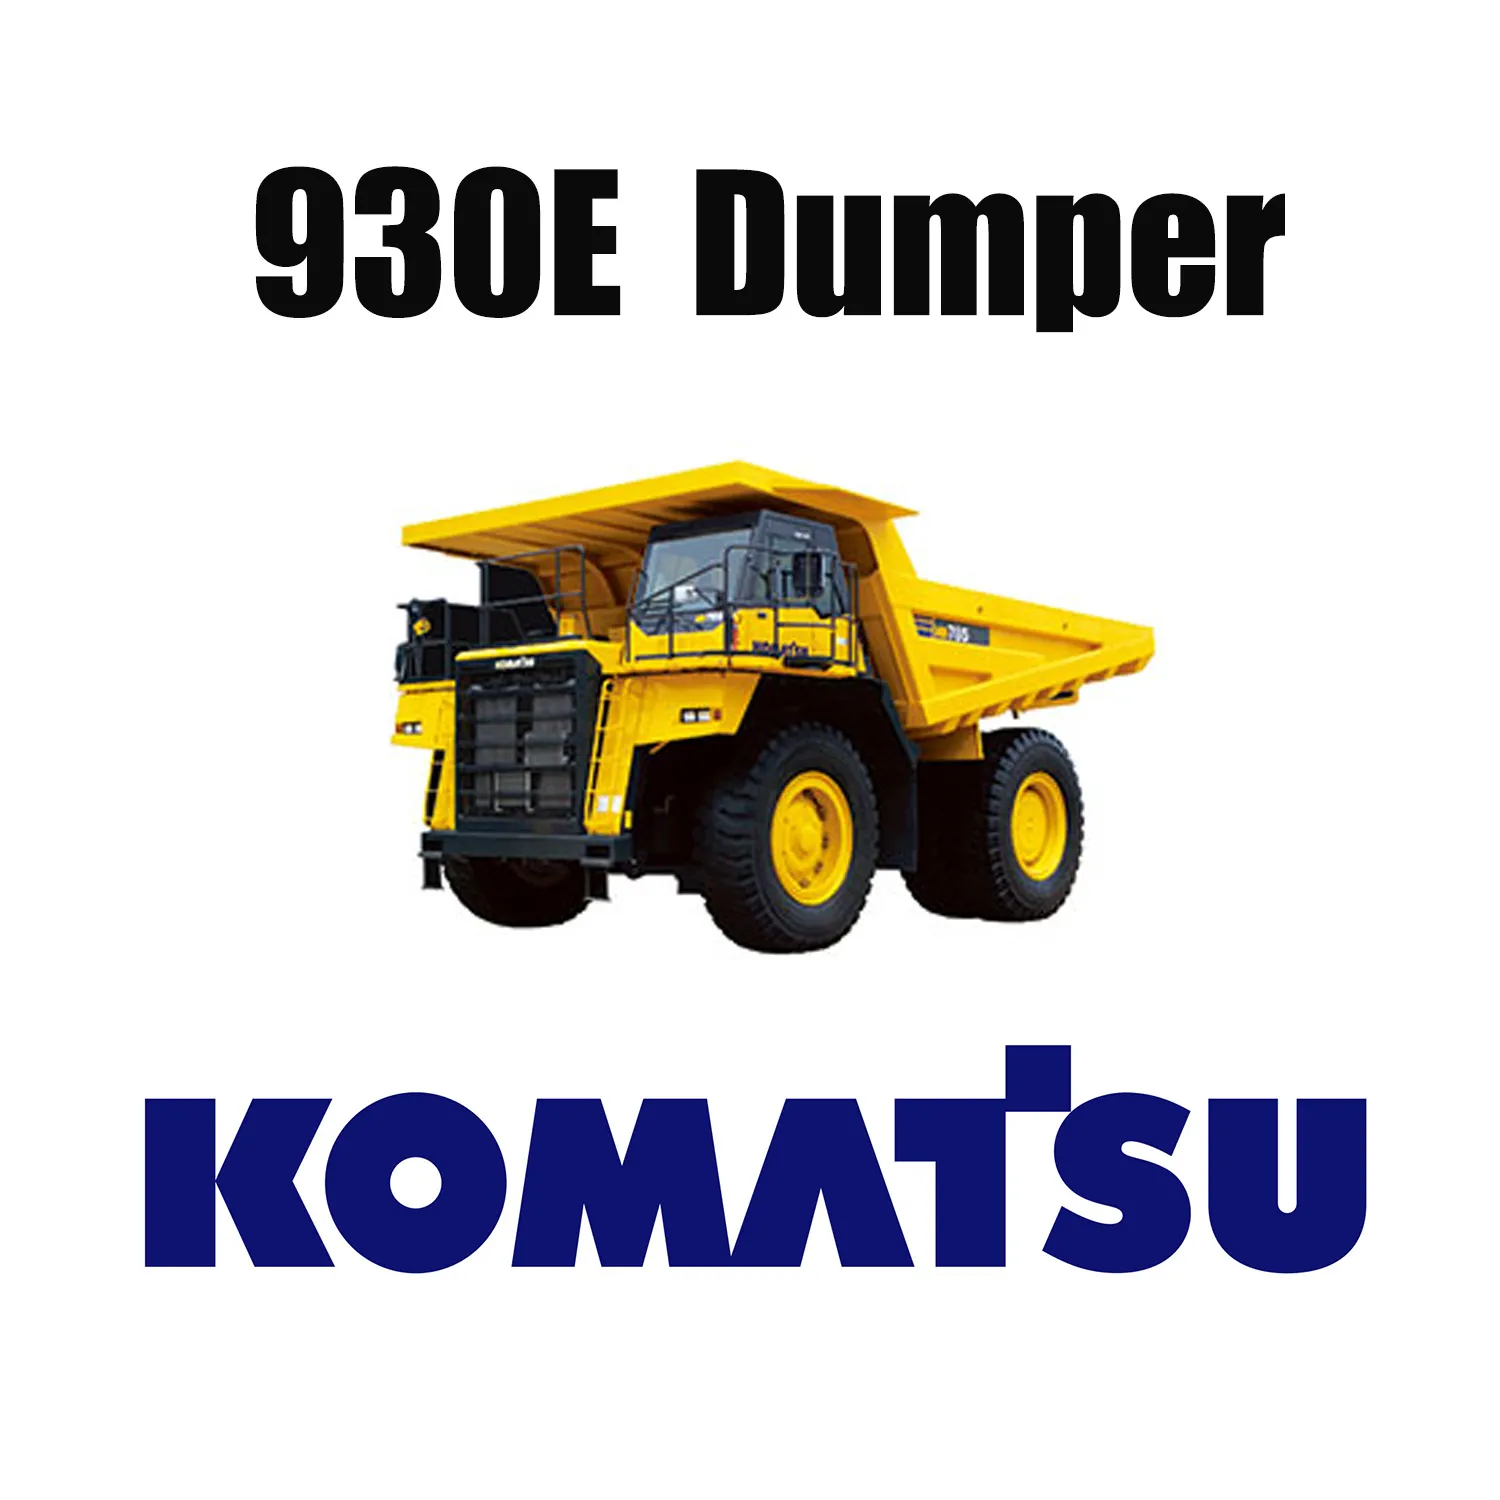 53/80R63 Внедорожные шины для горнодобывающей промышленности, применяемые для KOMATSU 930E